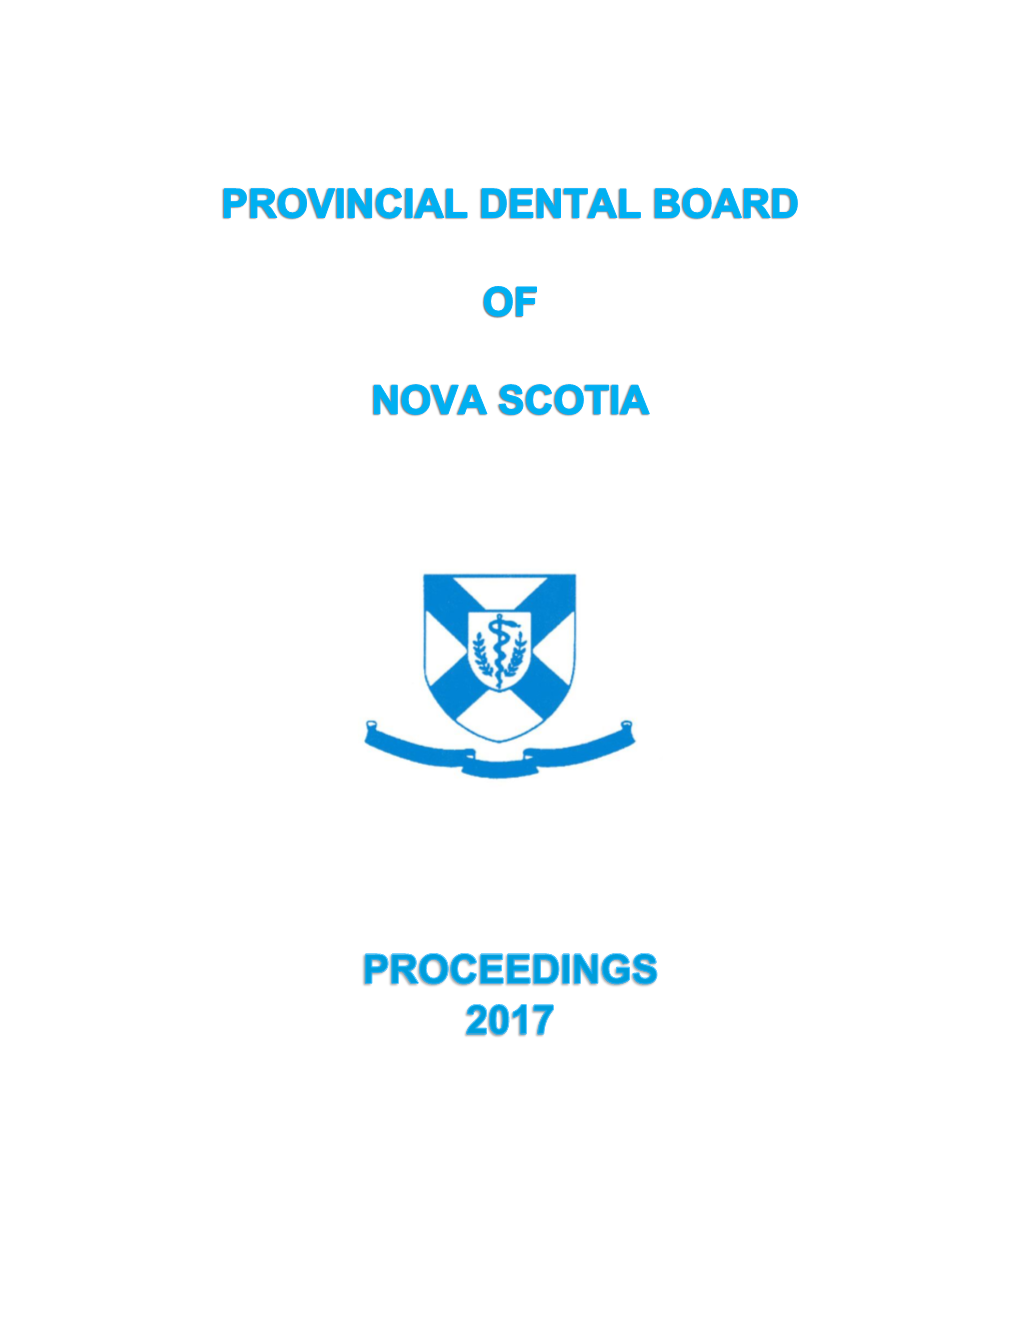 Board Proceedings 2017